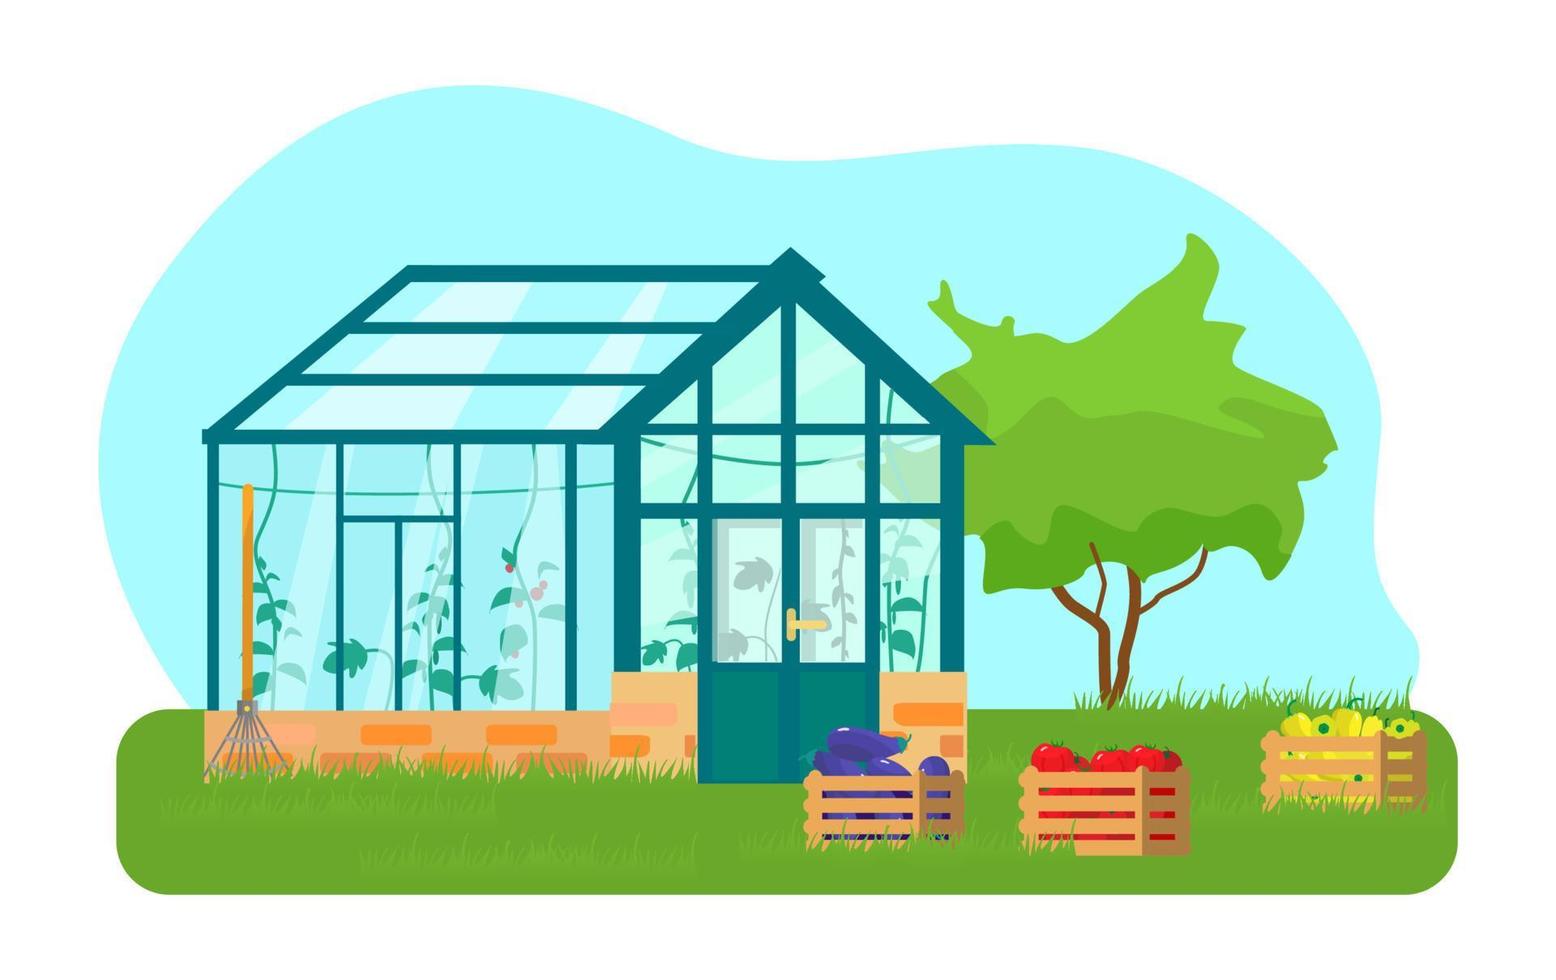 ilustração em vetor de estufa com plantas diferentes dentro em estilo simples. casa de vidro com tomates e plantas de pepino. caixas de madeira com legumes.